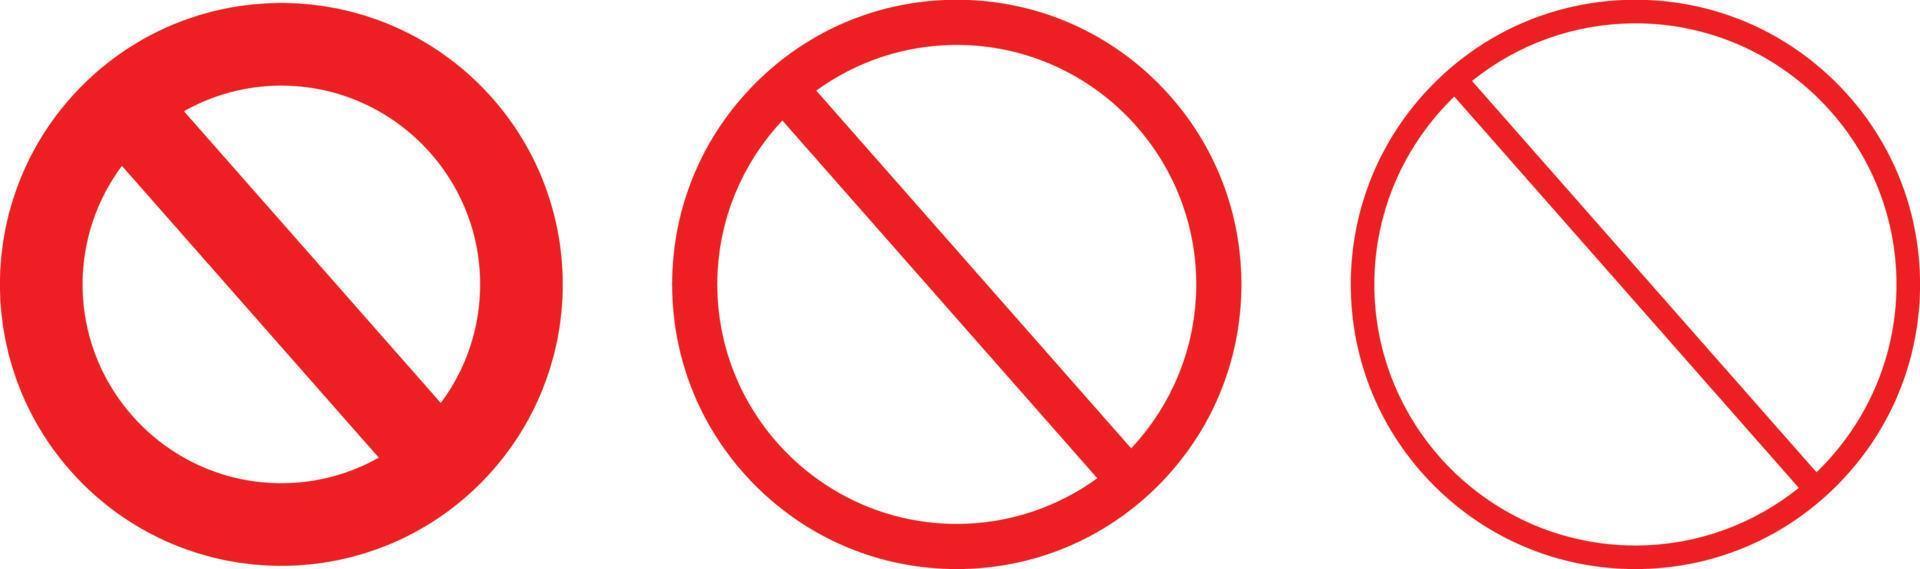 restriktion tecken ikoner. förbud symboler samling vektor